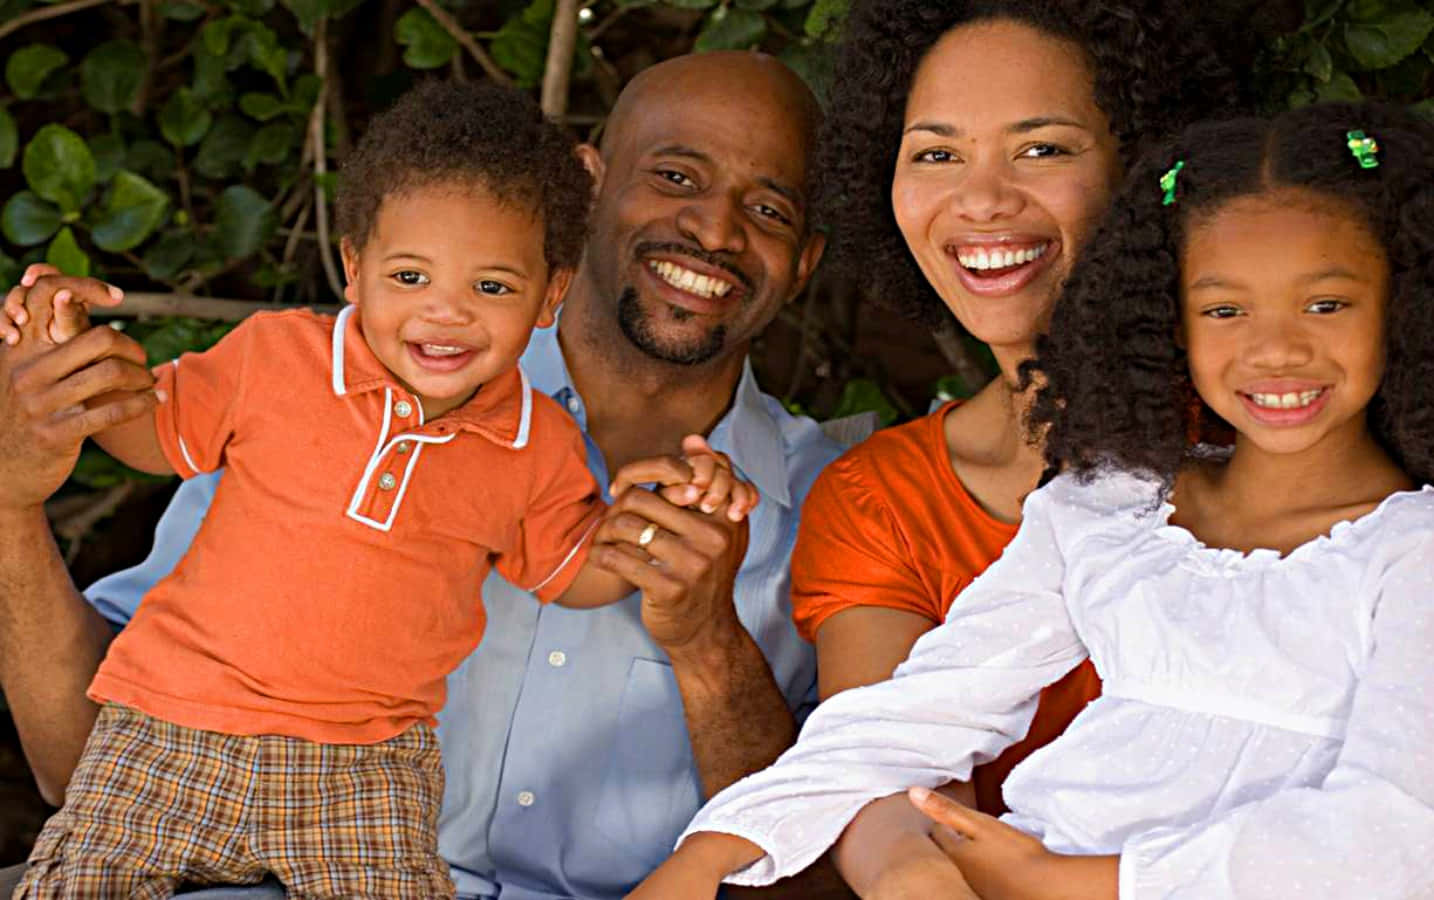 A loving black family celebrating together.